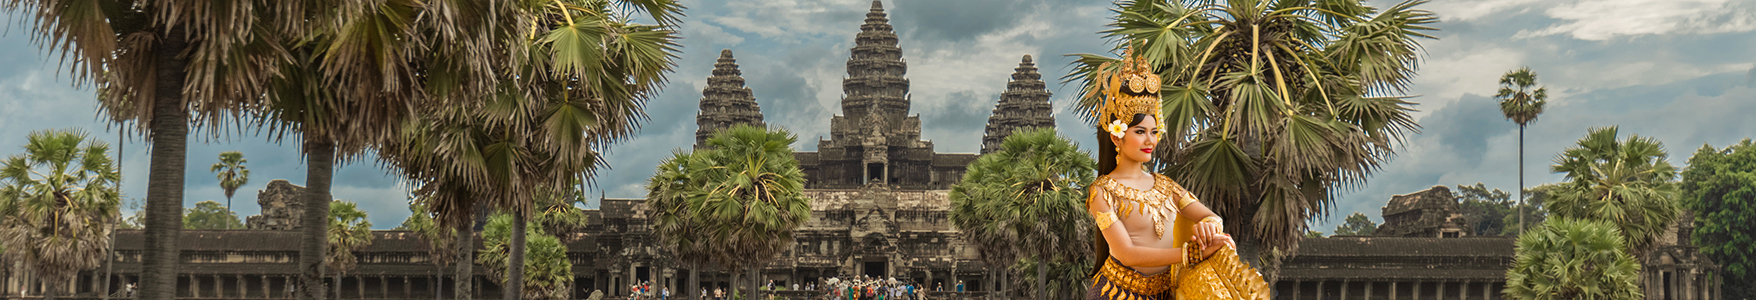 Tours of Angkor Wat